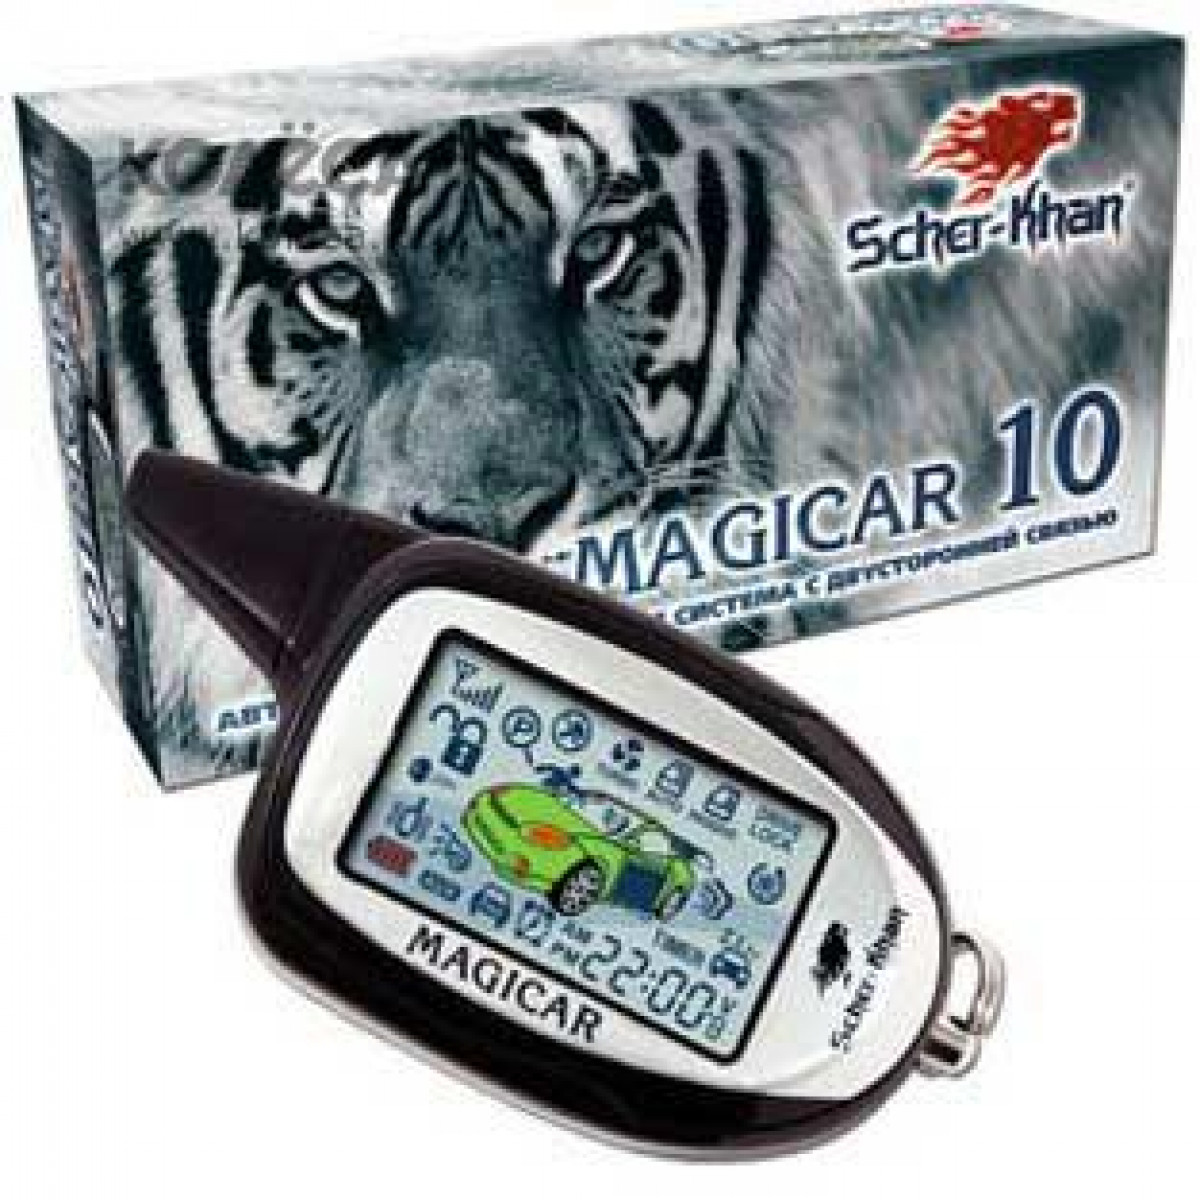 Автосигнализация Scher-Khan Magicar 10 Купить За 4300 ₽ С.